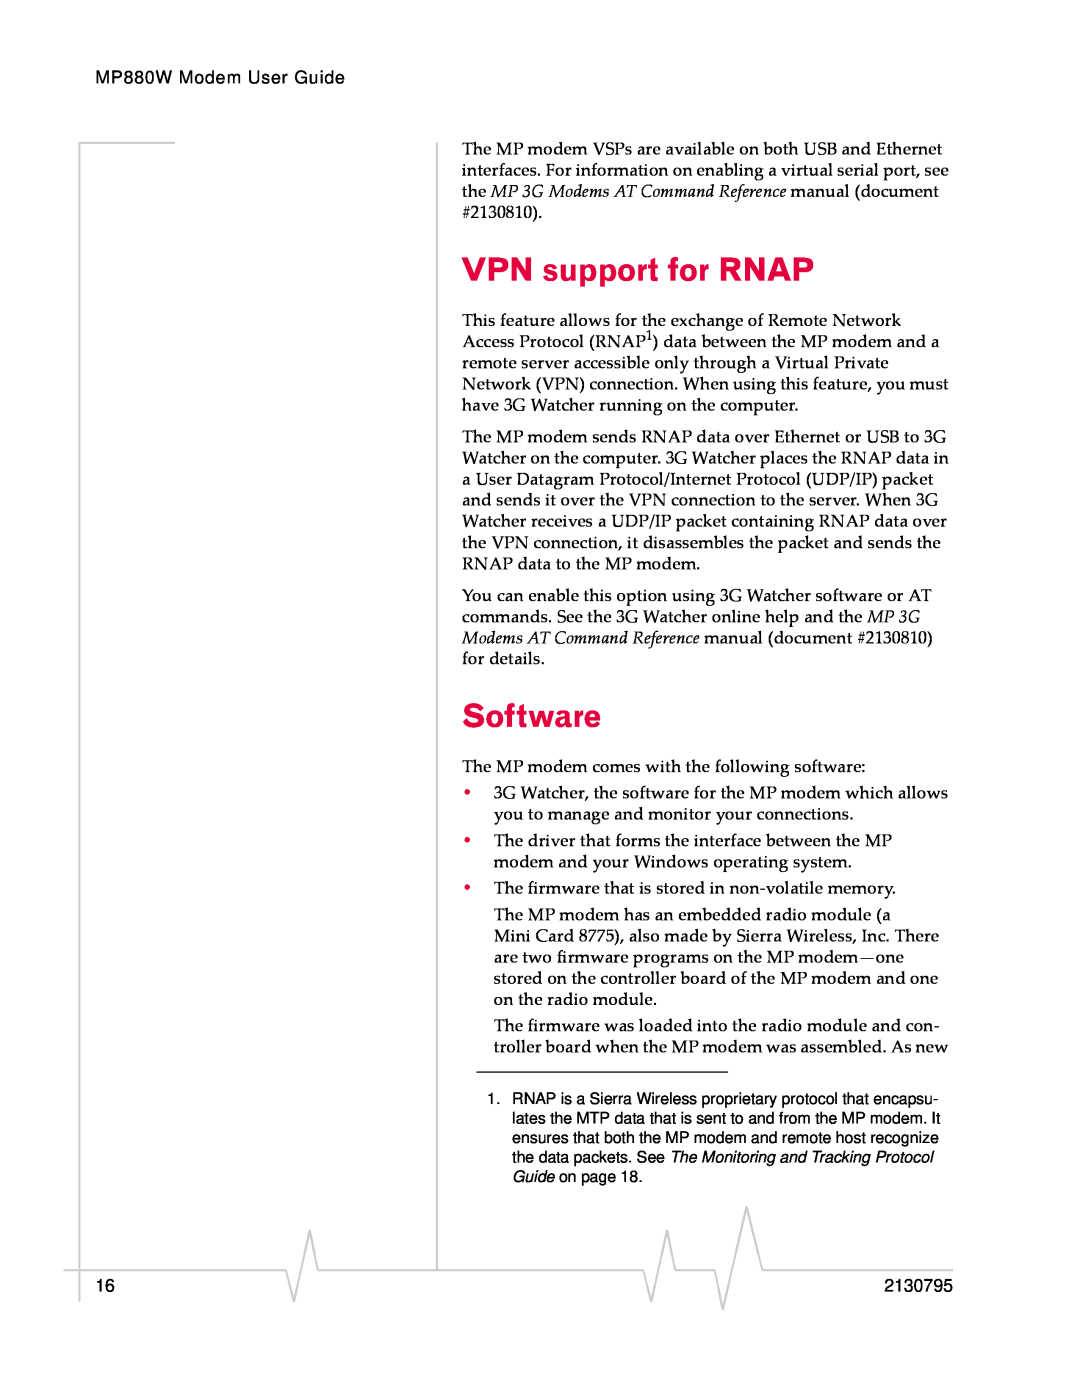 Sierra Wireless MP 880W manual VPN support for RNAP, Software 